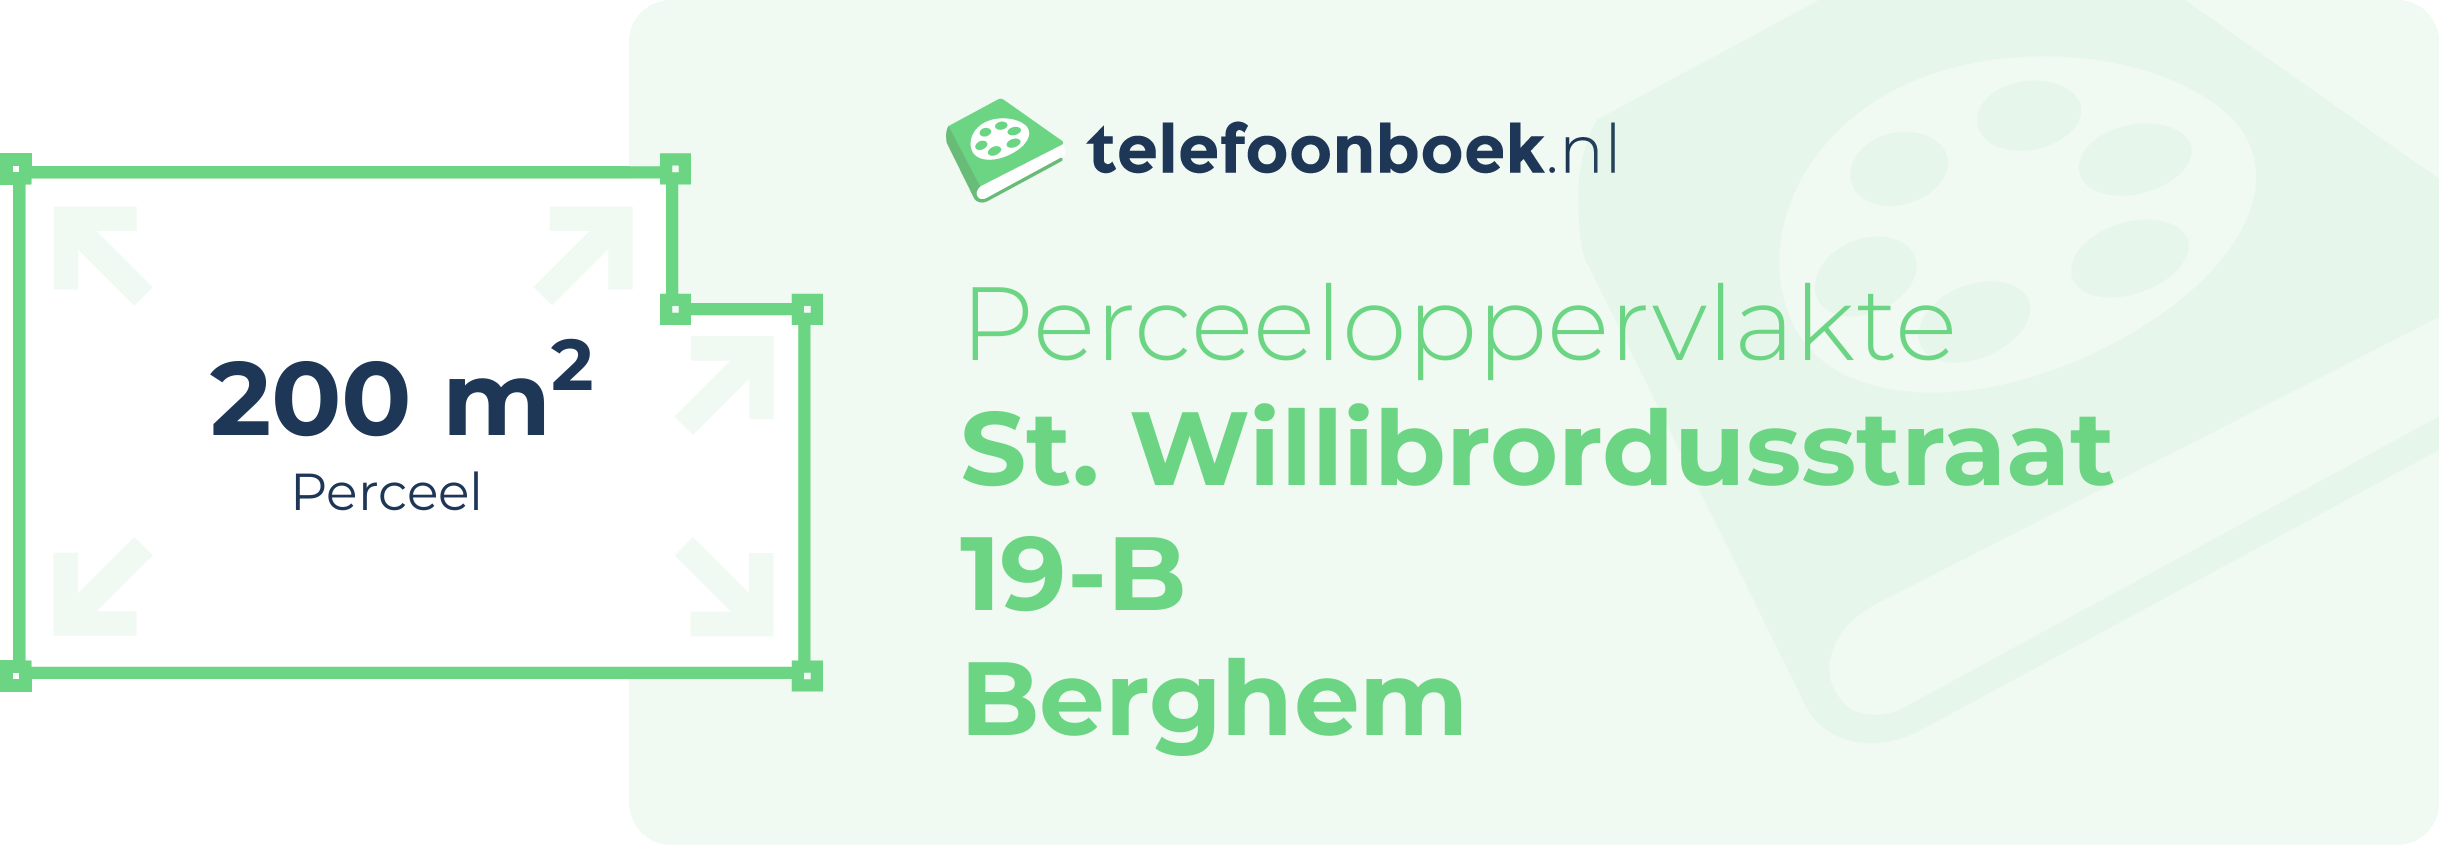 Perceeloppervlakte St. Willibrordusstraat 19-B Berghem